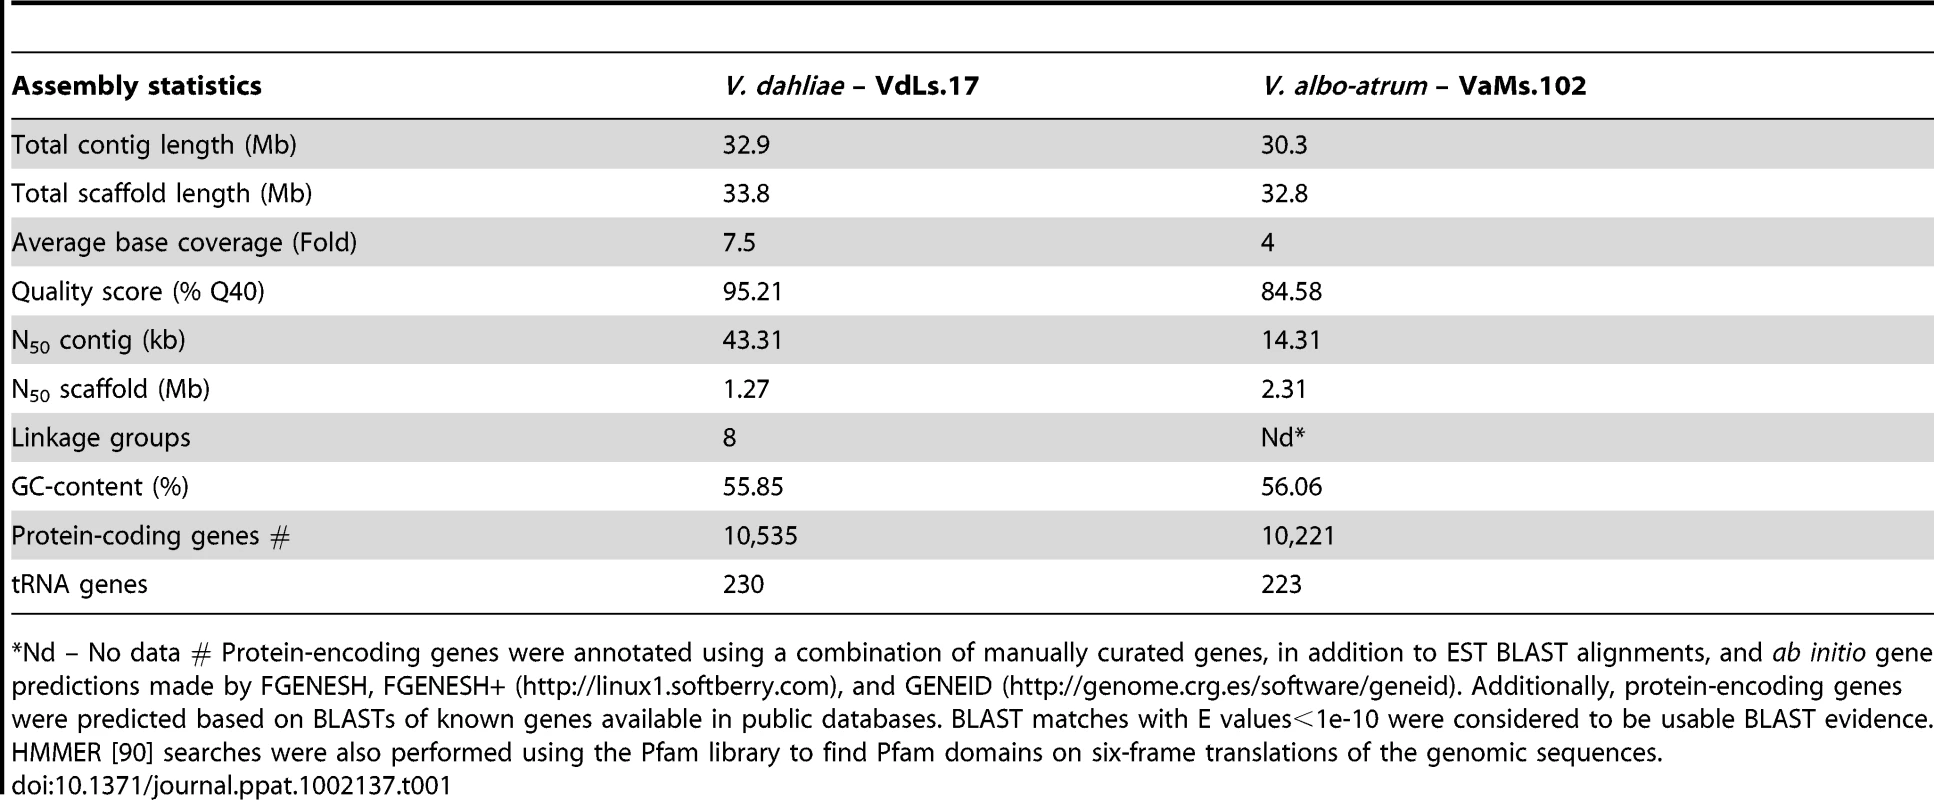 Comparison of genome statistics between <i>V. dahliae</i> and <i>V. albo-atrum</i>.